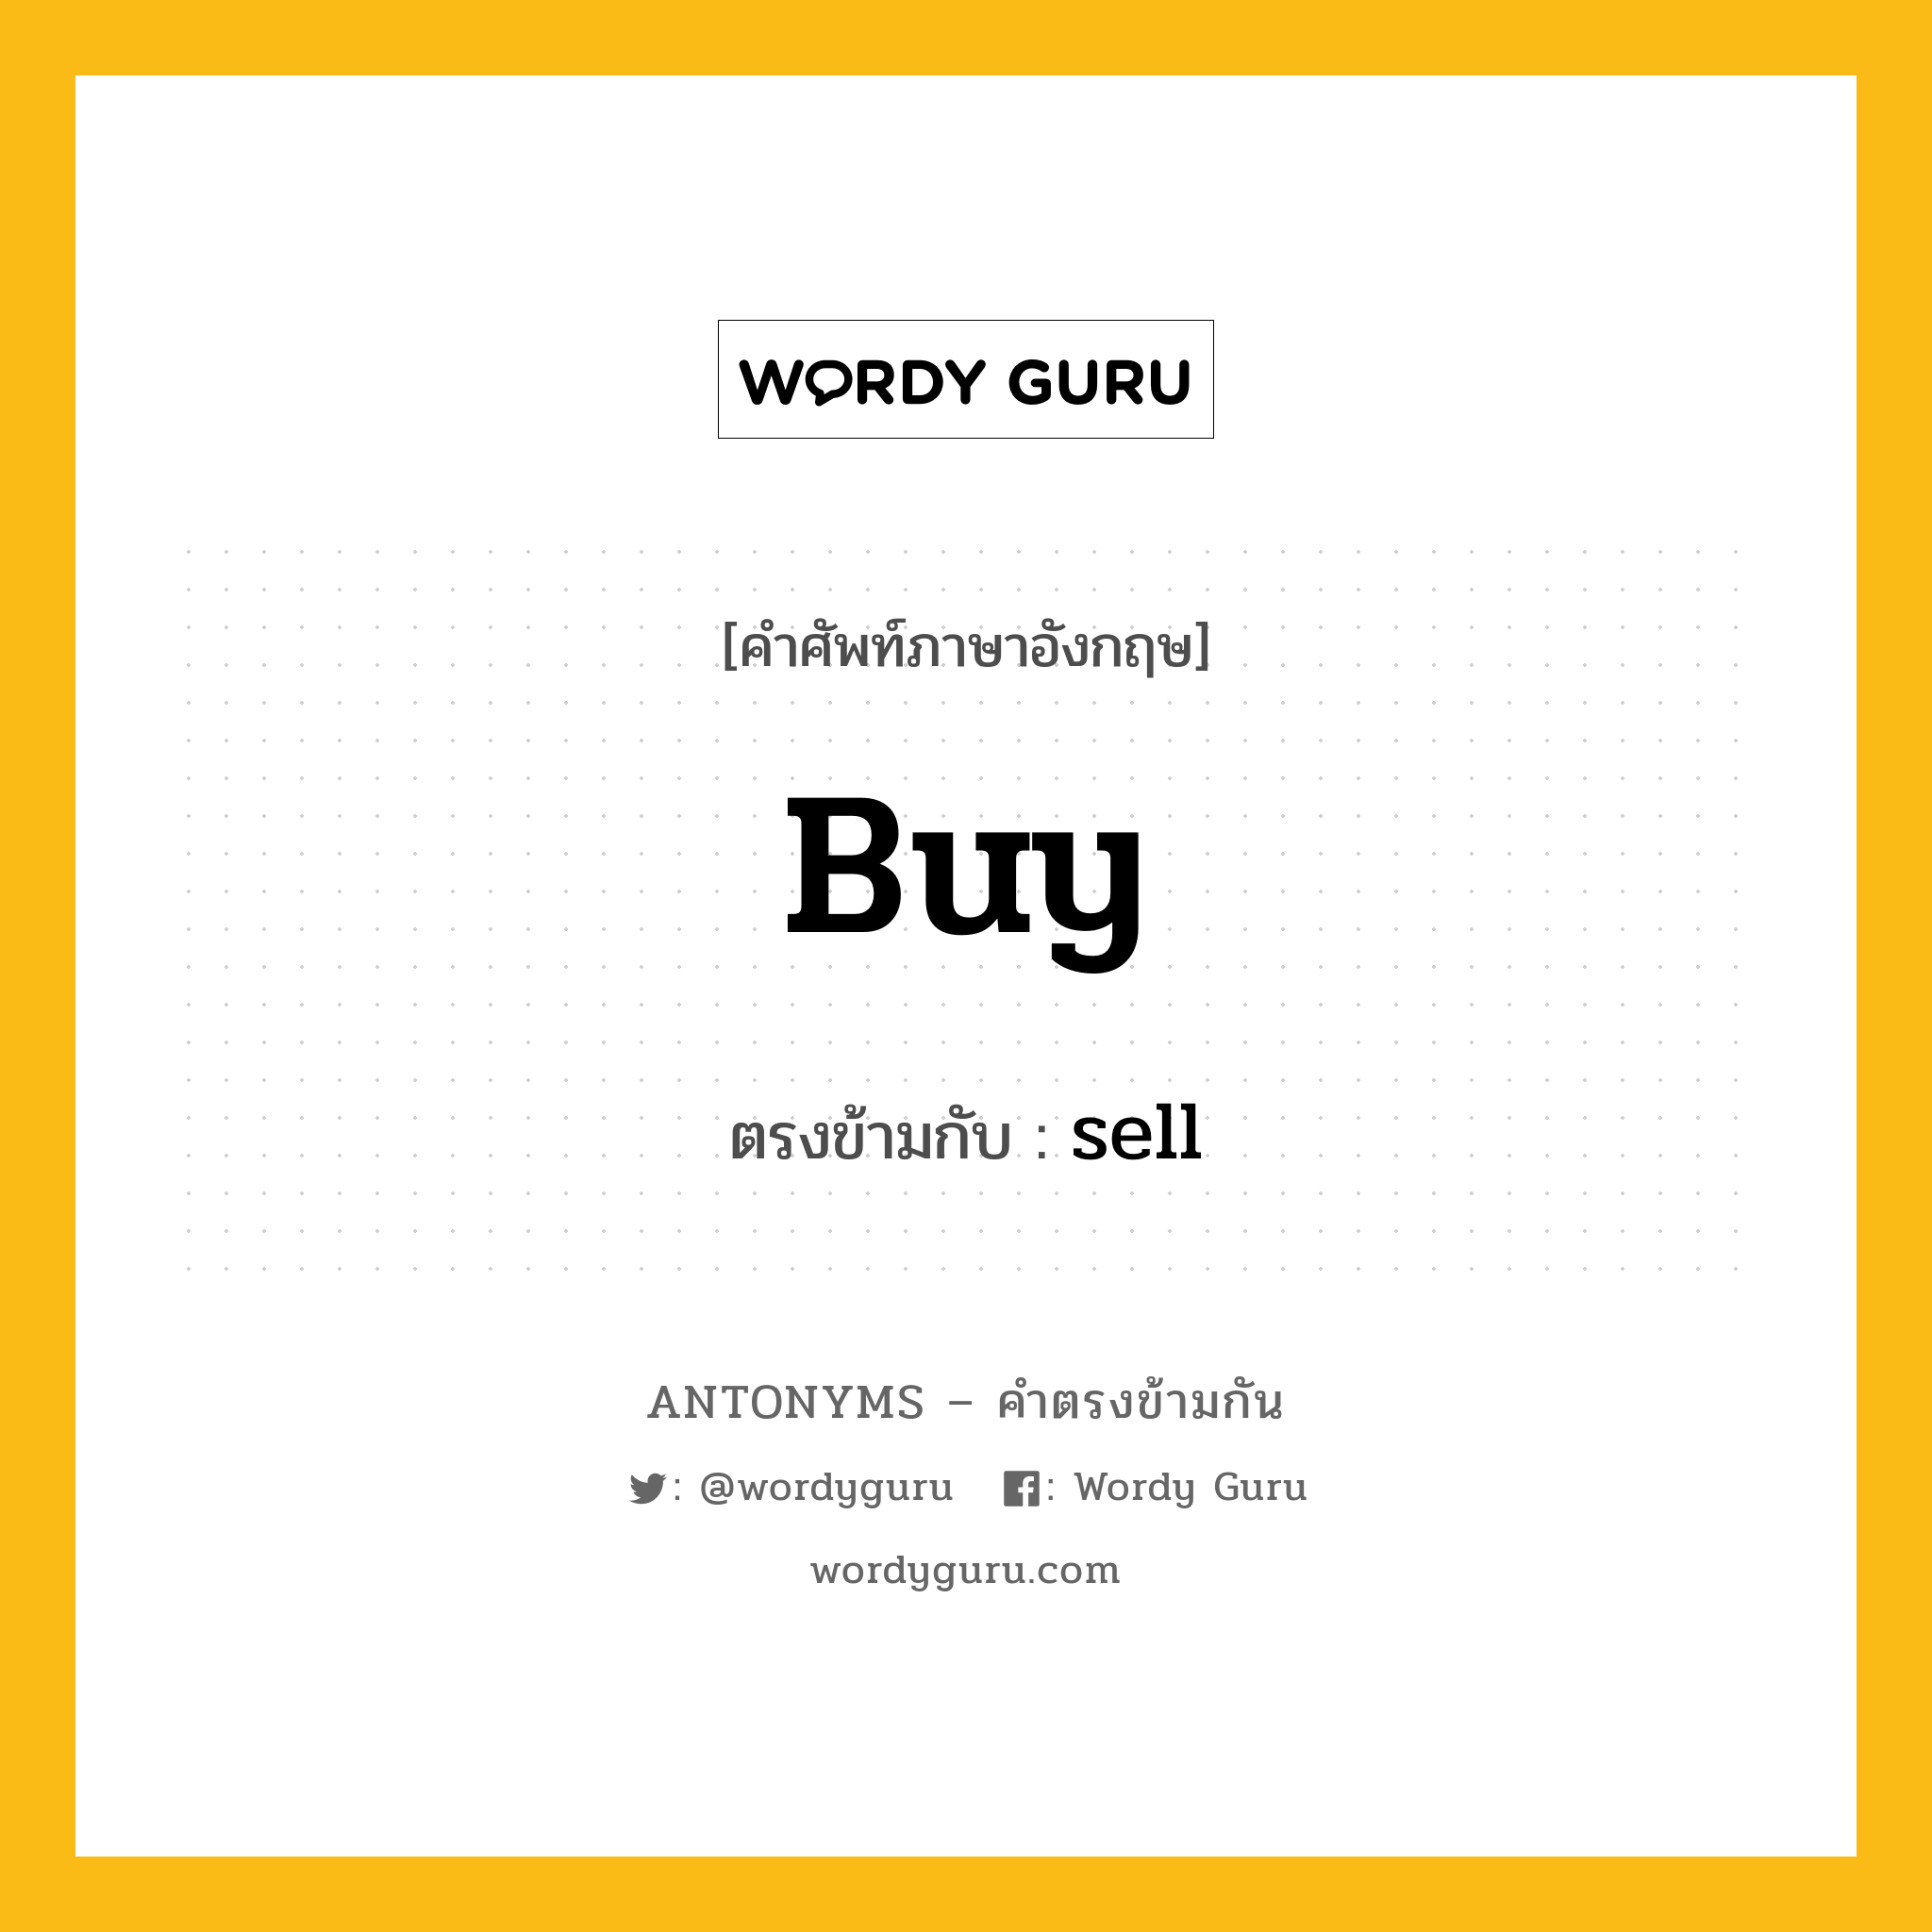 buy เป็นคำตรงข้ามกับคำไหนบ้าง?, คำศัพท์ภาษาอังกฤษ buy ตรงข้ามกับ sell หมวด sell